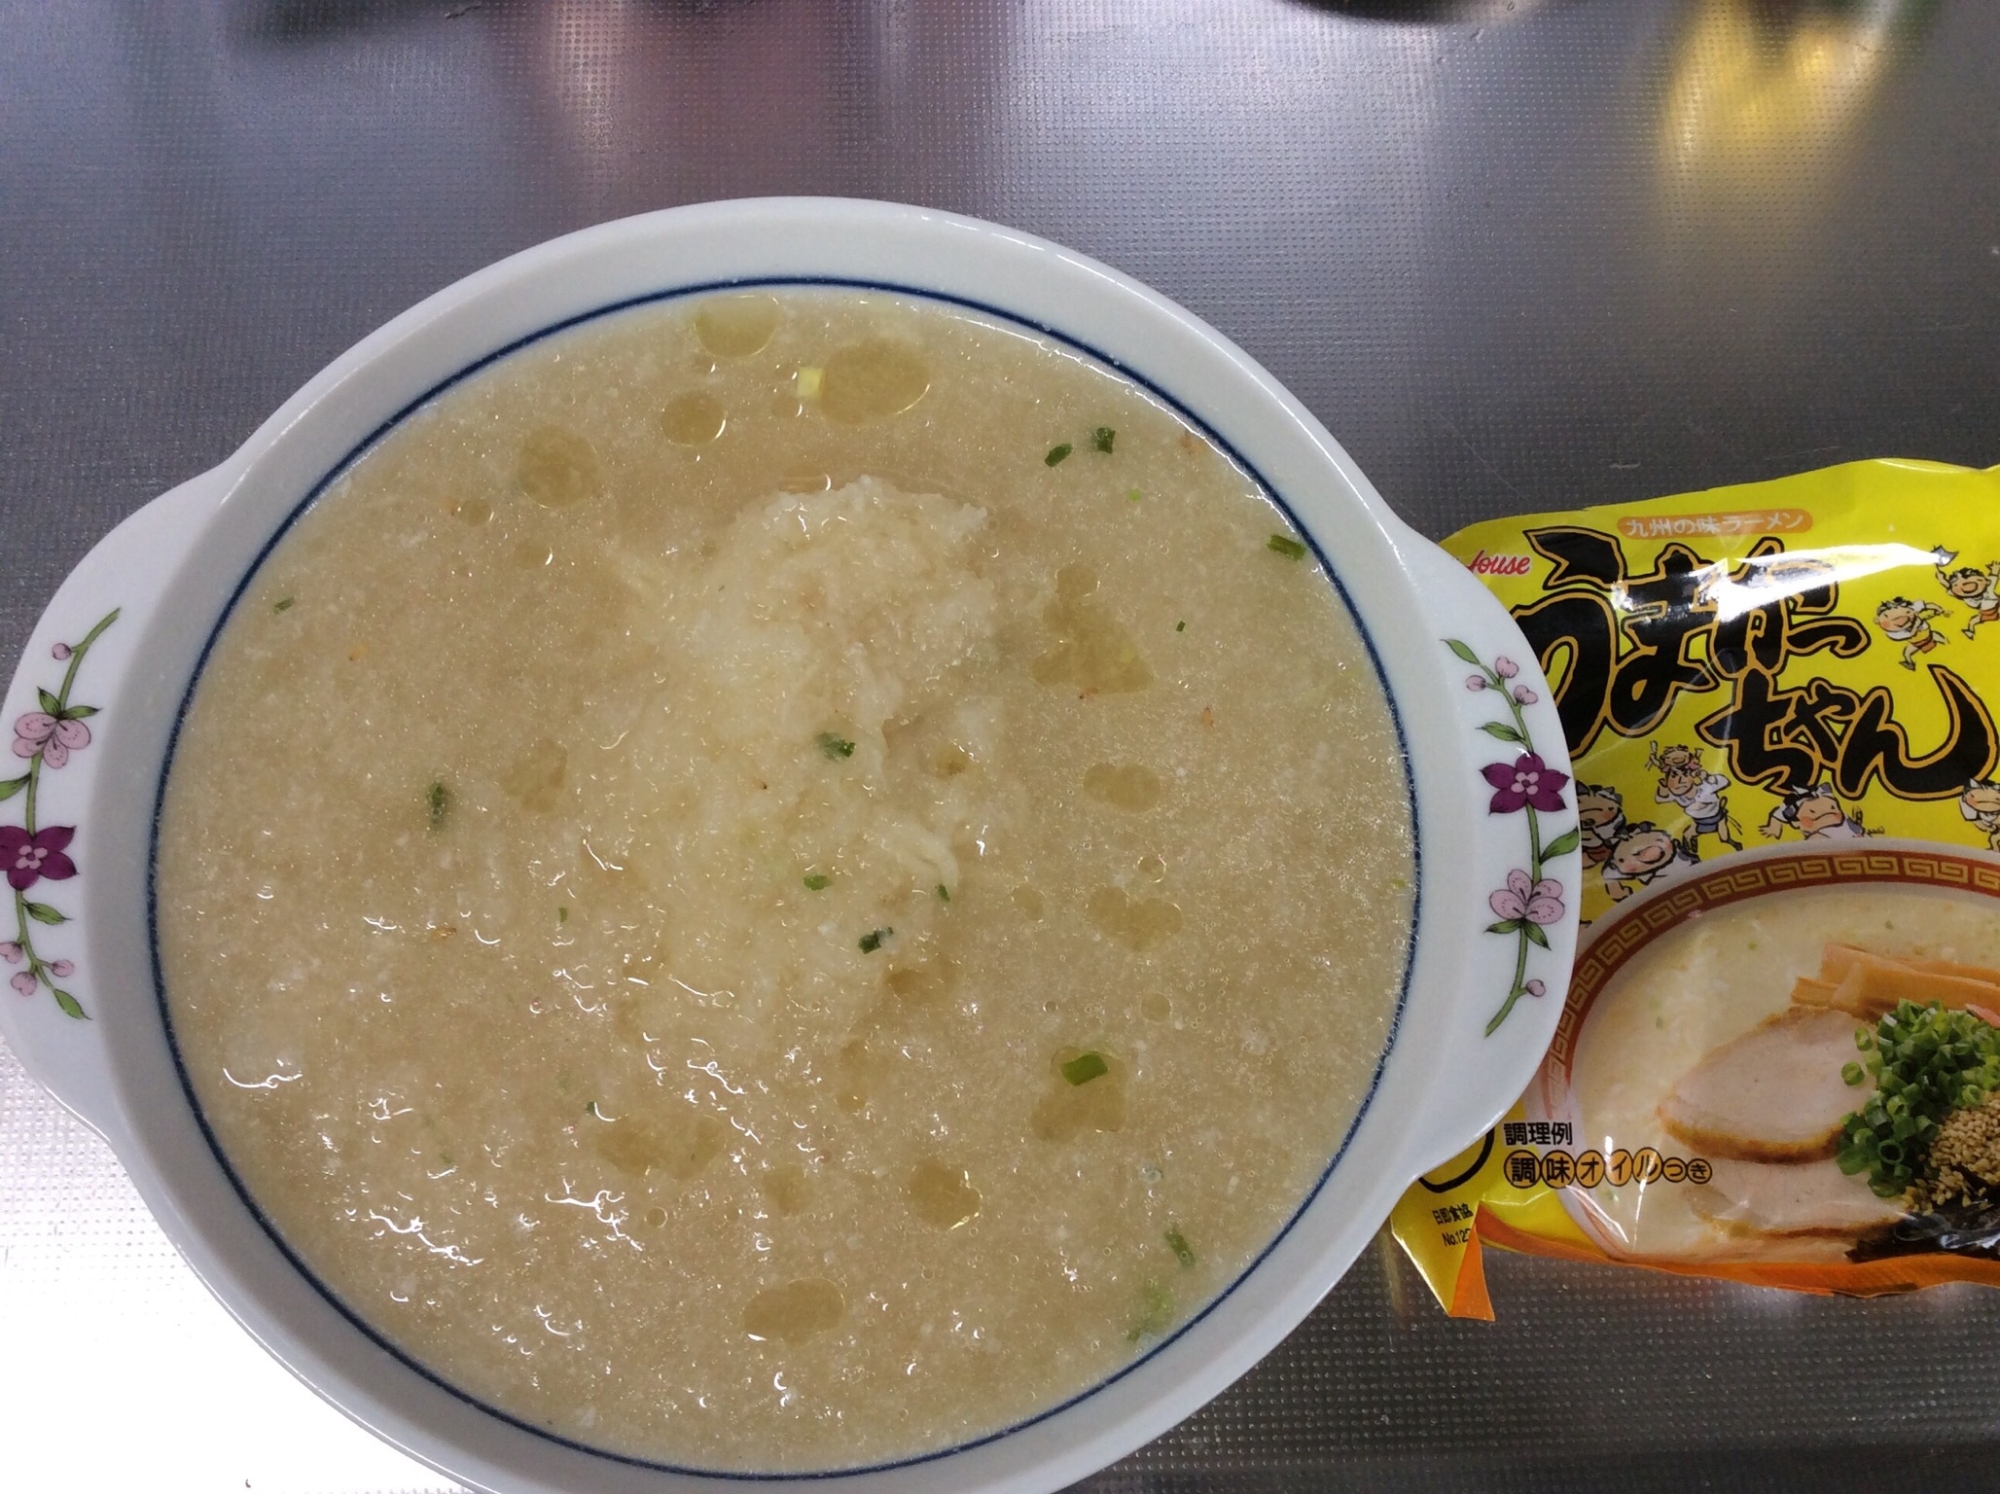 トンコツ袋麺アレンジ(醤油&大根おろし足し)